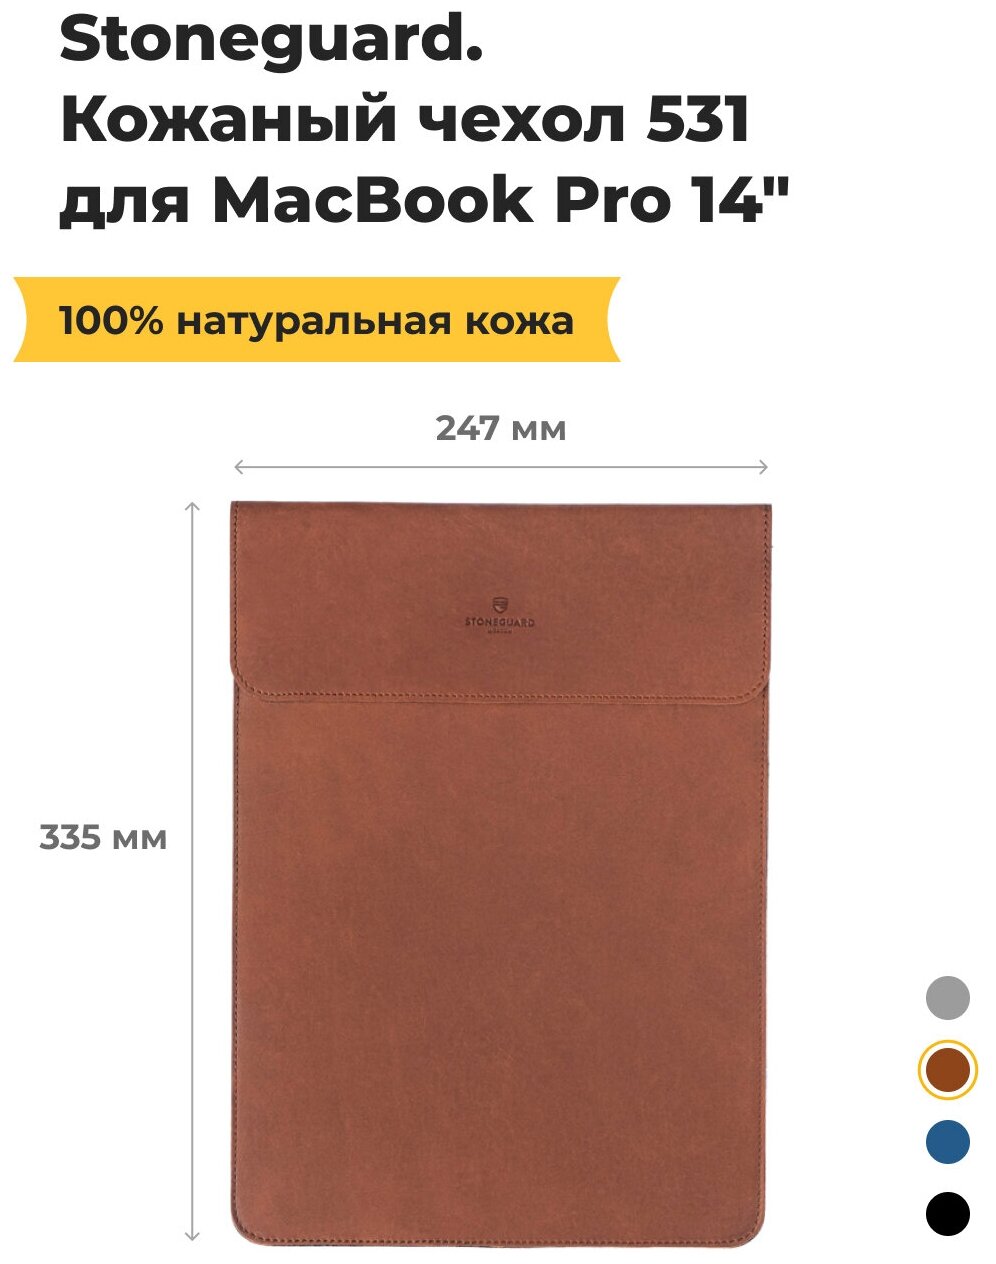 Чехол-рукав Stoneguard 531 для MacBook Pro (14 дюймов, 2021 и новее) (Коричневый / Rust)